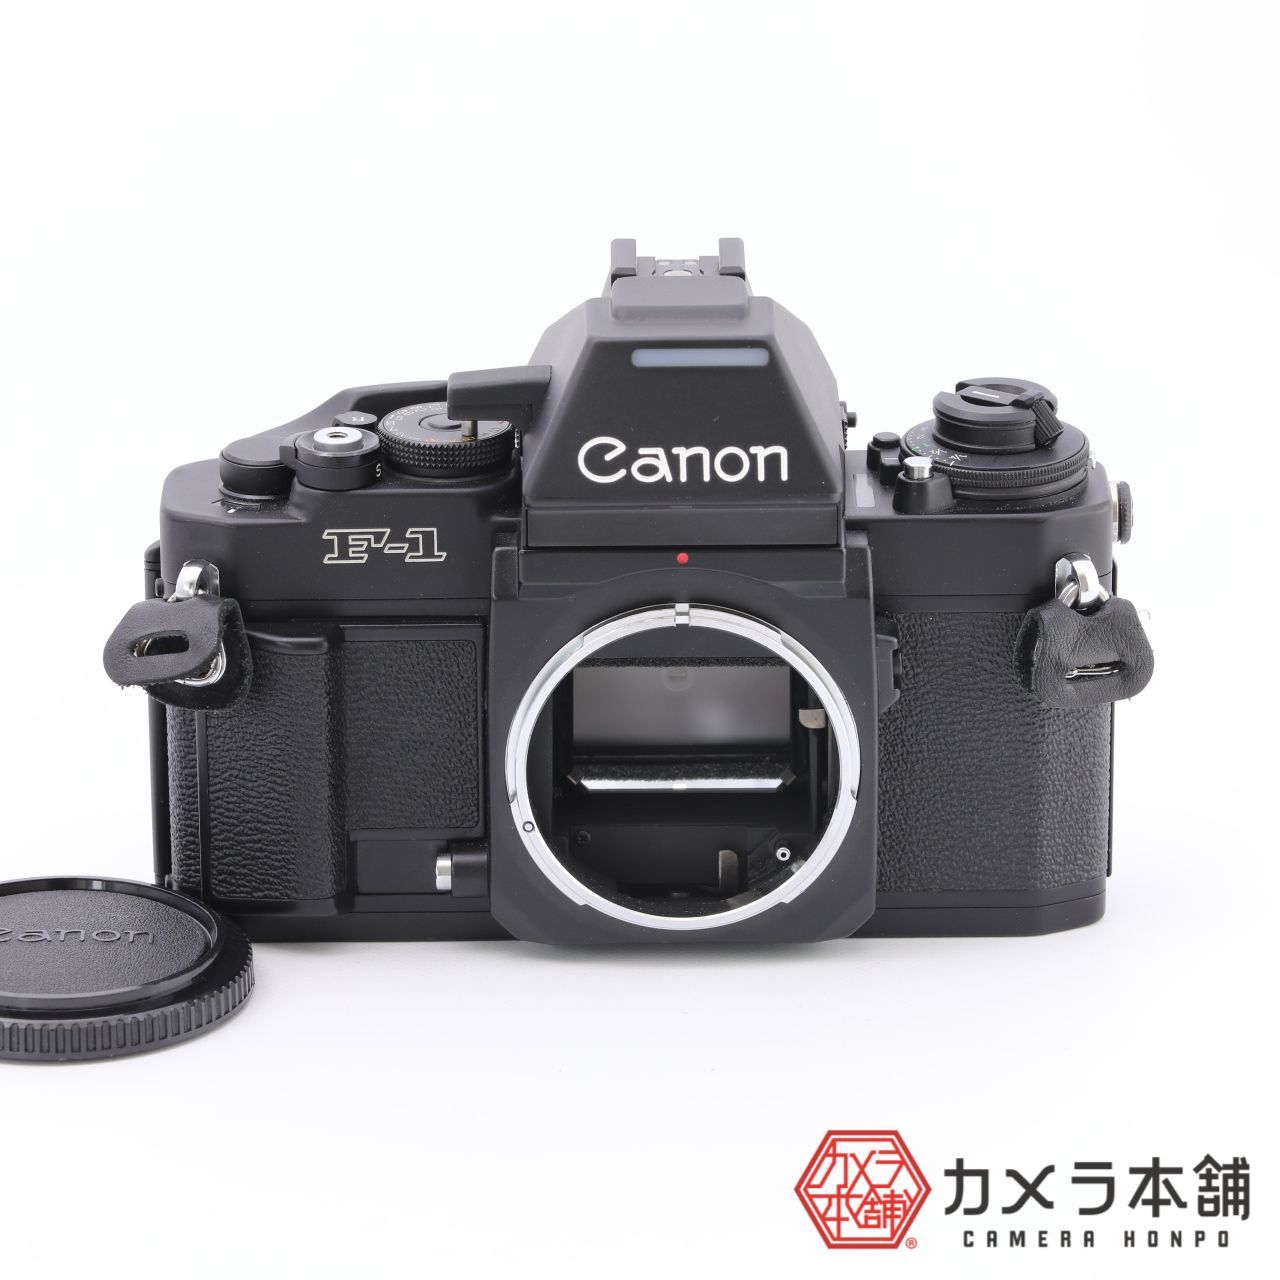 Canon キヤノン New F-1 AE ボディ フィルム一眼レフ - カメラ本舗